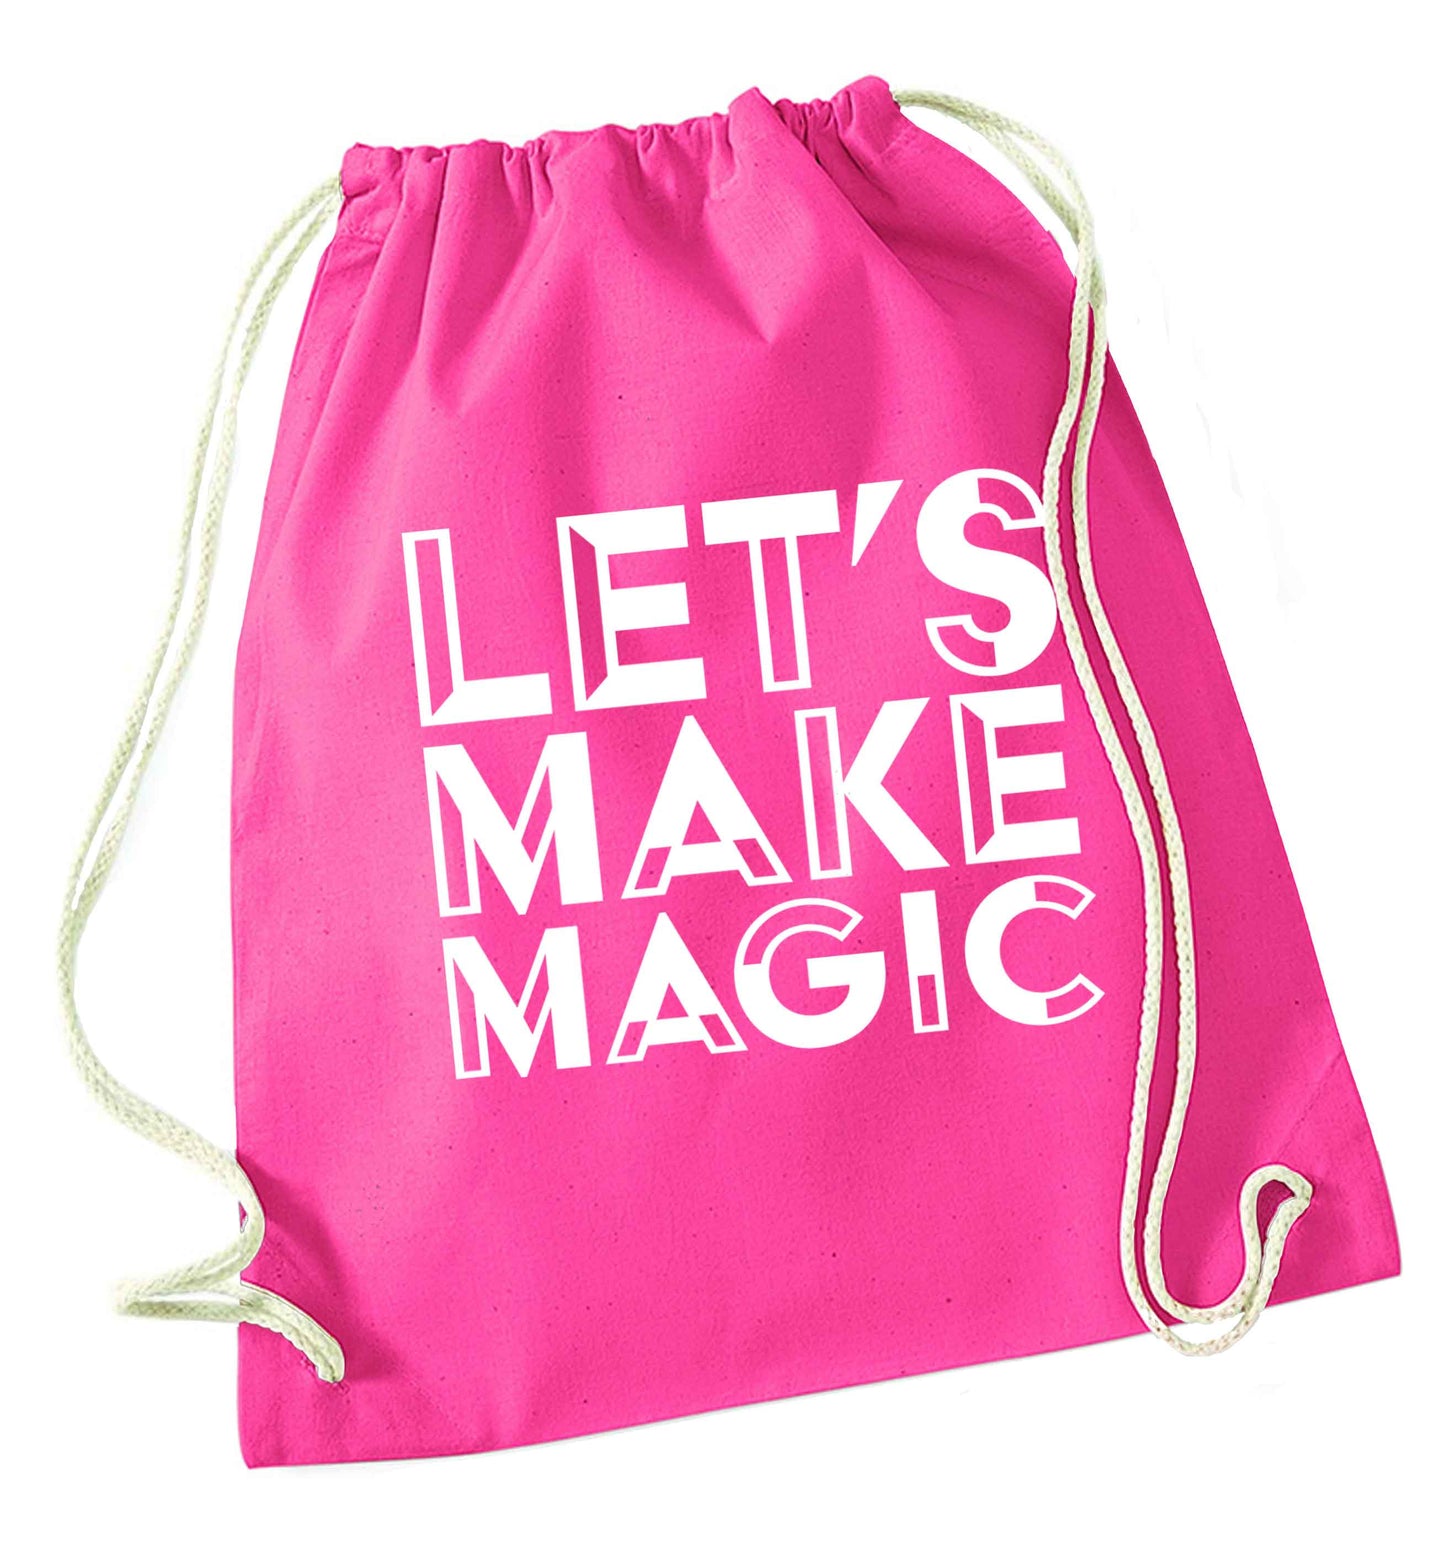 Let's make magic pink drawstring bag